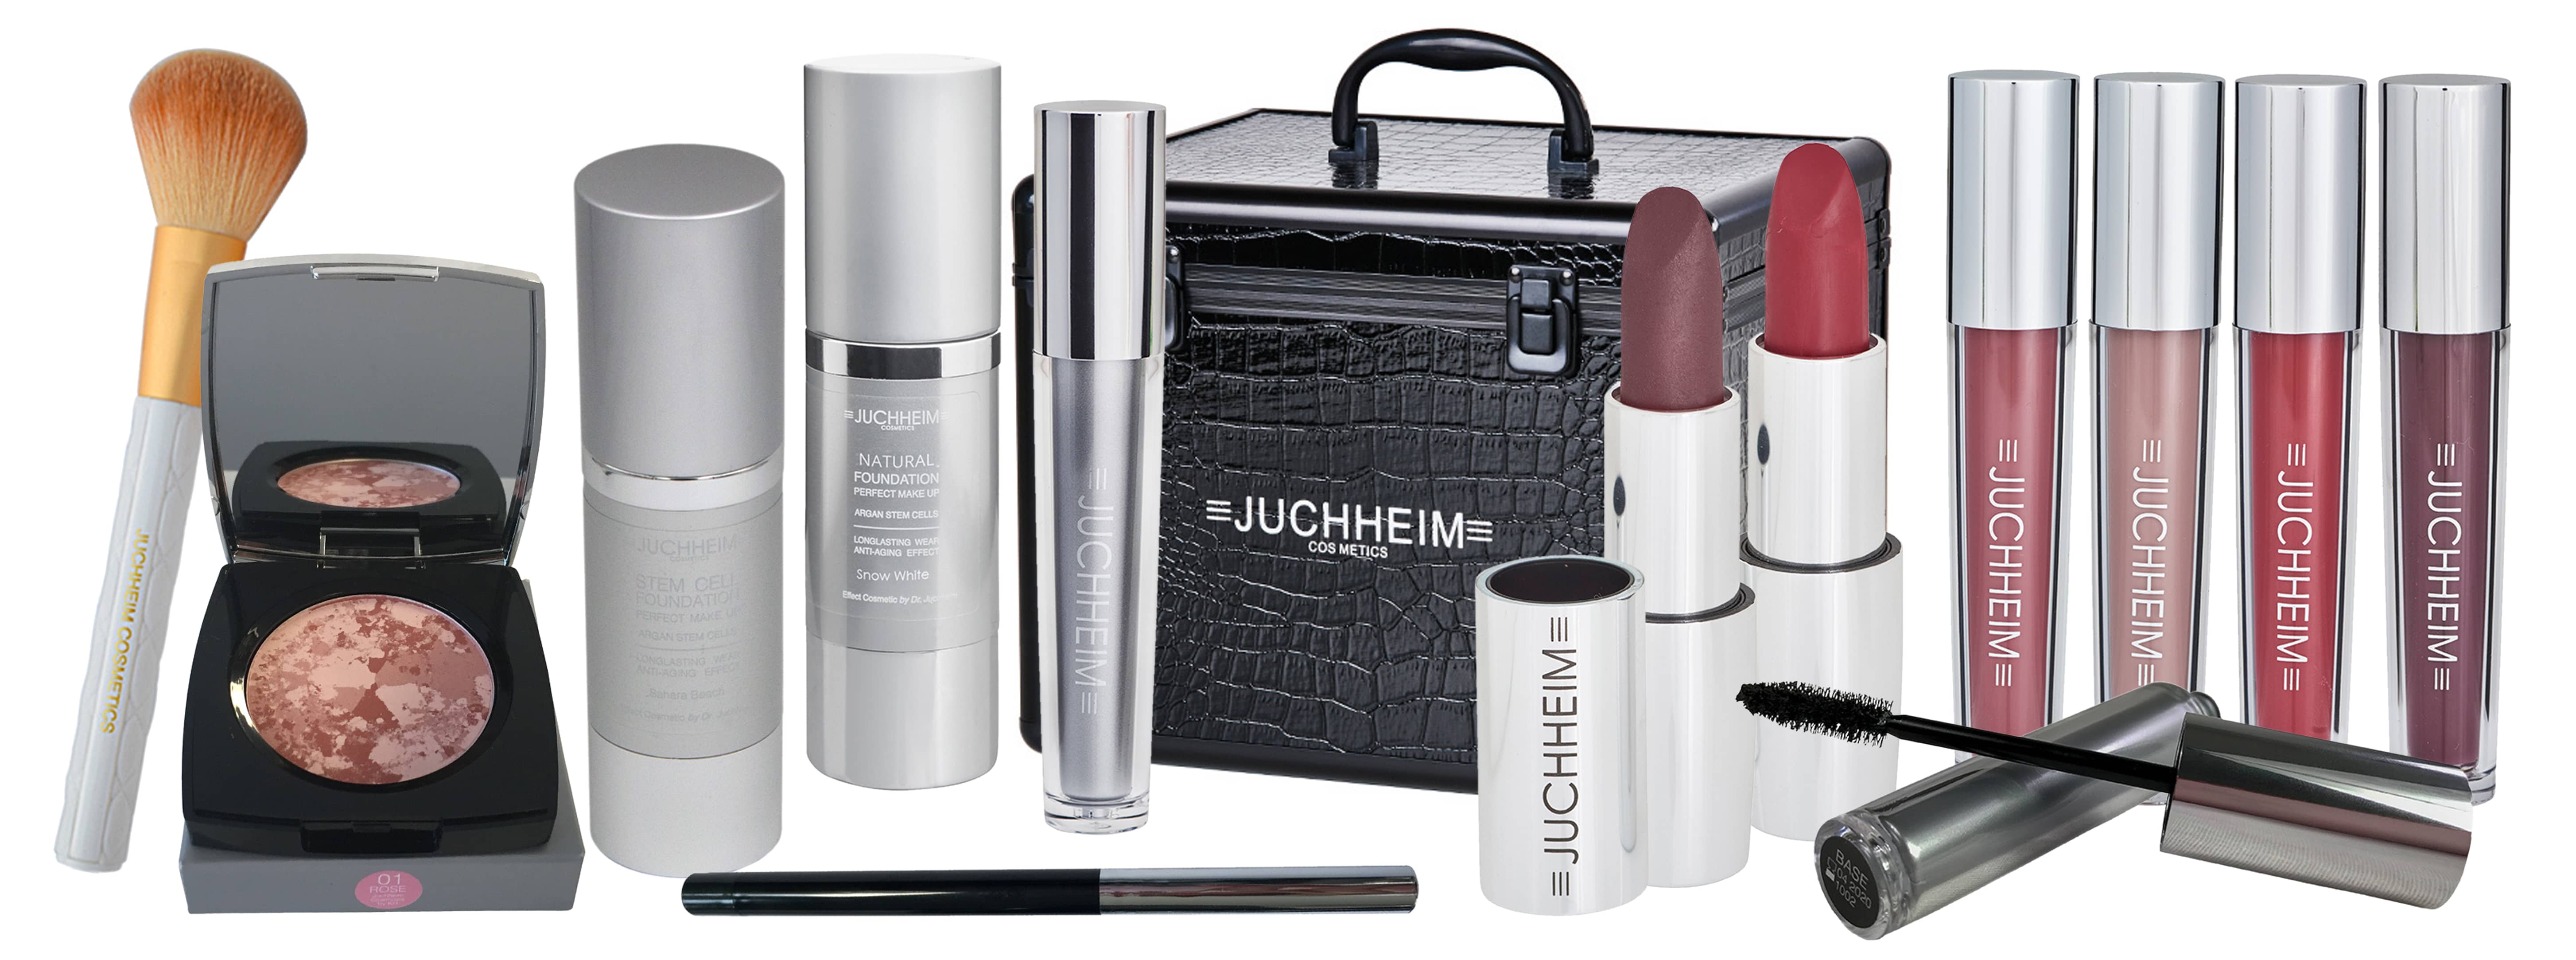 Dr. Juchheim Dekorative Kosmetik Übersicht